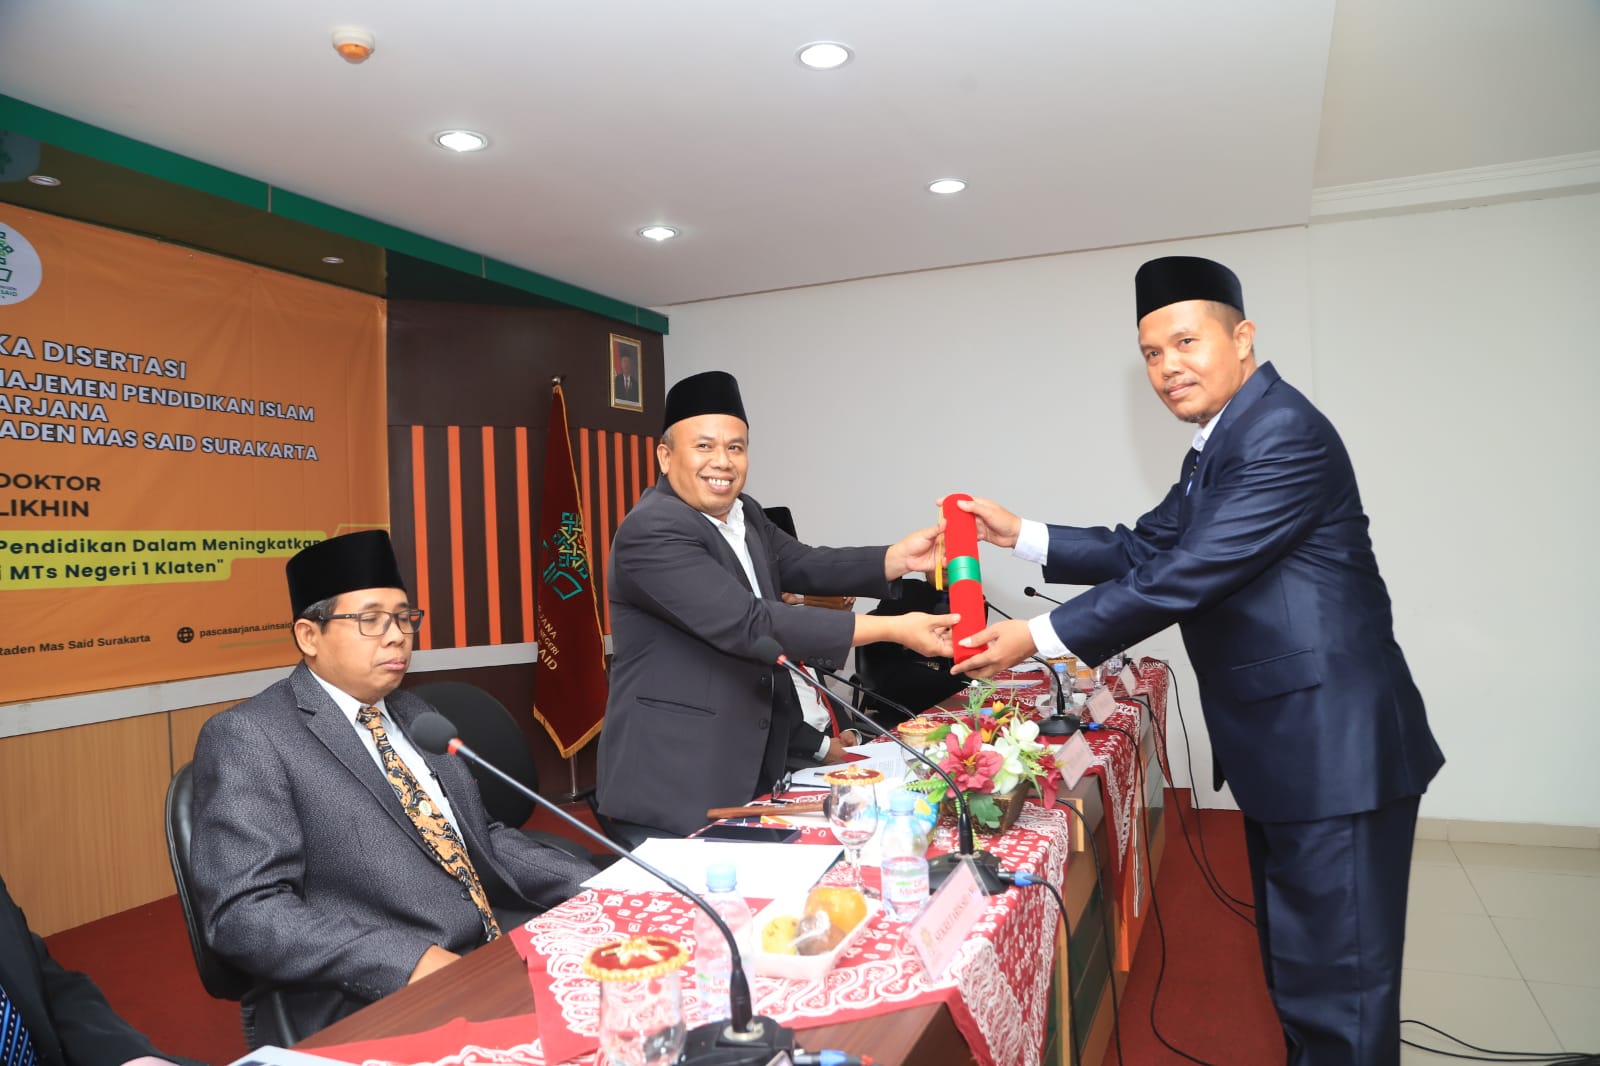 Dr. Anif Sholikhin, Kepala Kantor Kemenag Kabupaten Klaten Raih Gelar Doktor ke - 57 UIN Raden Mas Said Surakarta